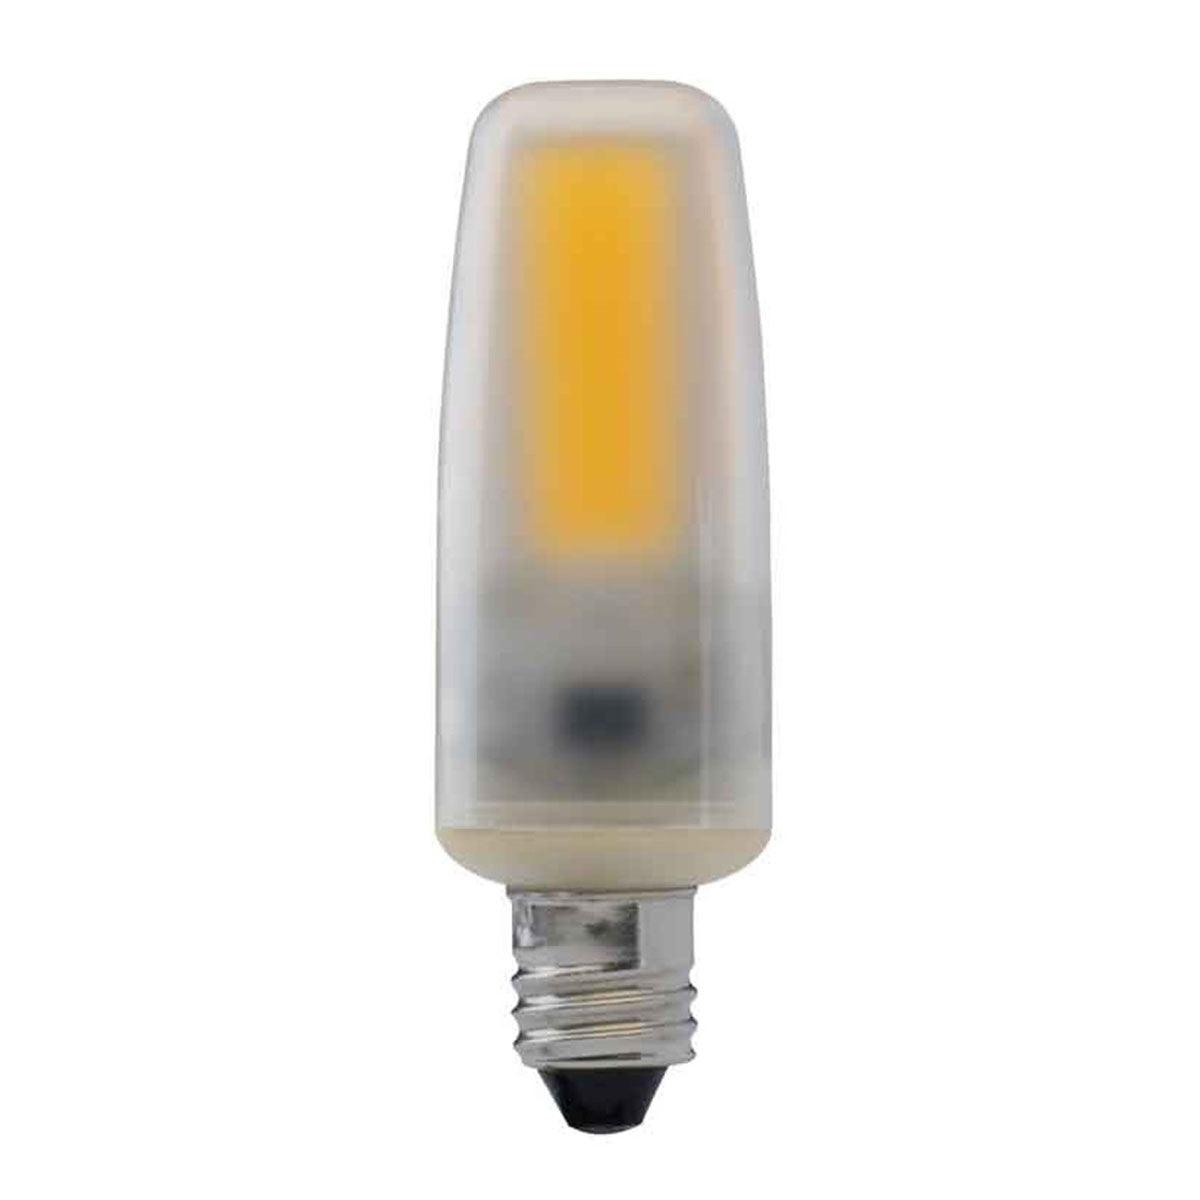 T4 Mini LED Bulb, 4 Watt, 460 Lumens, 3000K, E11 Mini-Candelabra Base, Frosted Finish